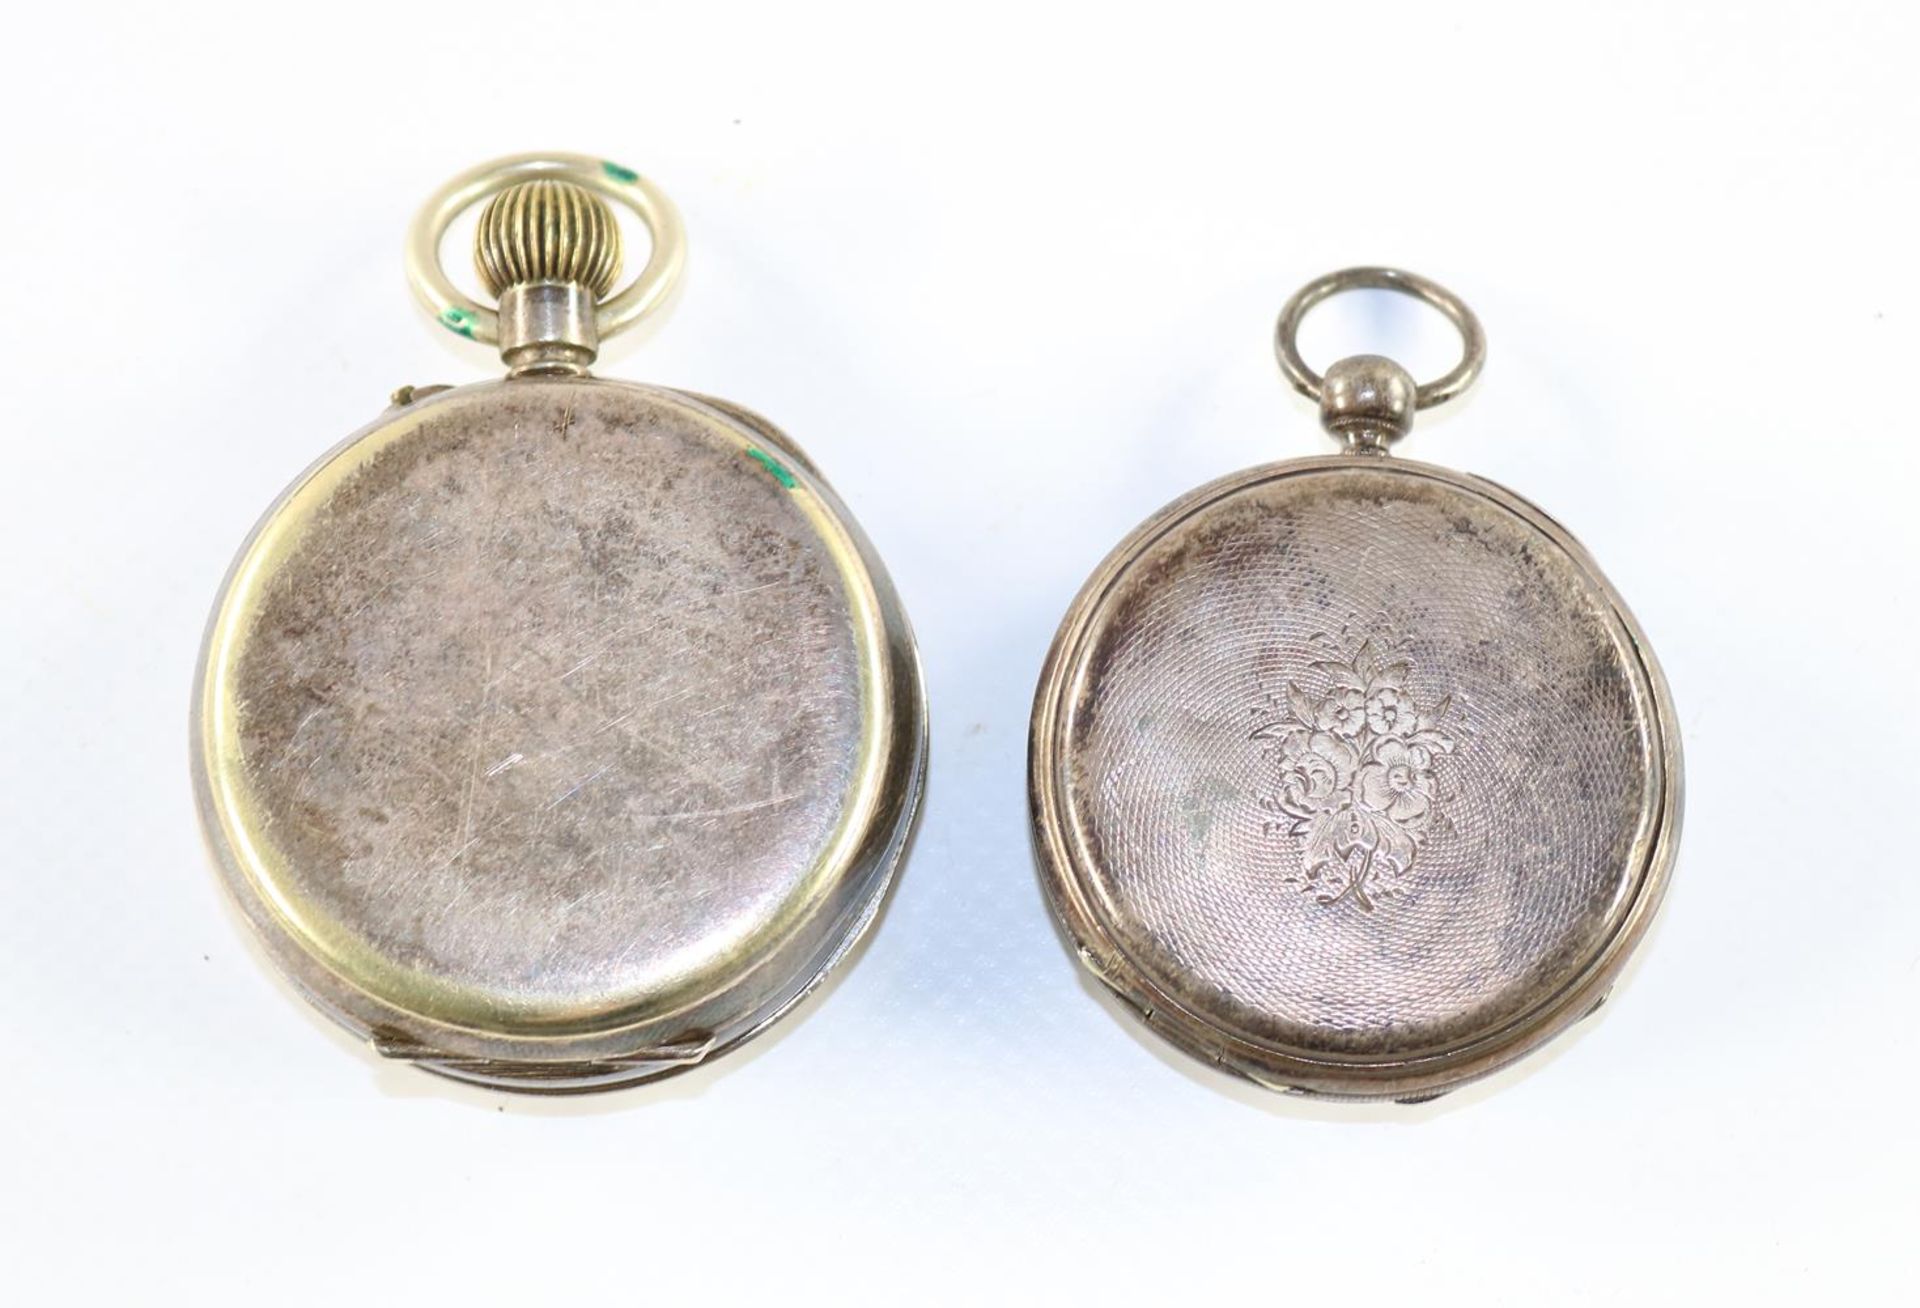 2 Taschenuhren Silber2 Taschenuhren Silber um 1900-20. Beide Gehäuse ungestempelt. Sil2 Ta - Bild 2 aus 2